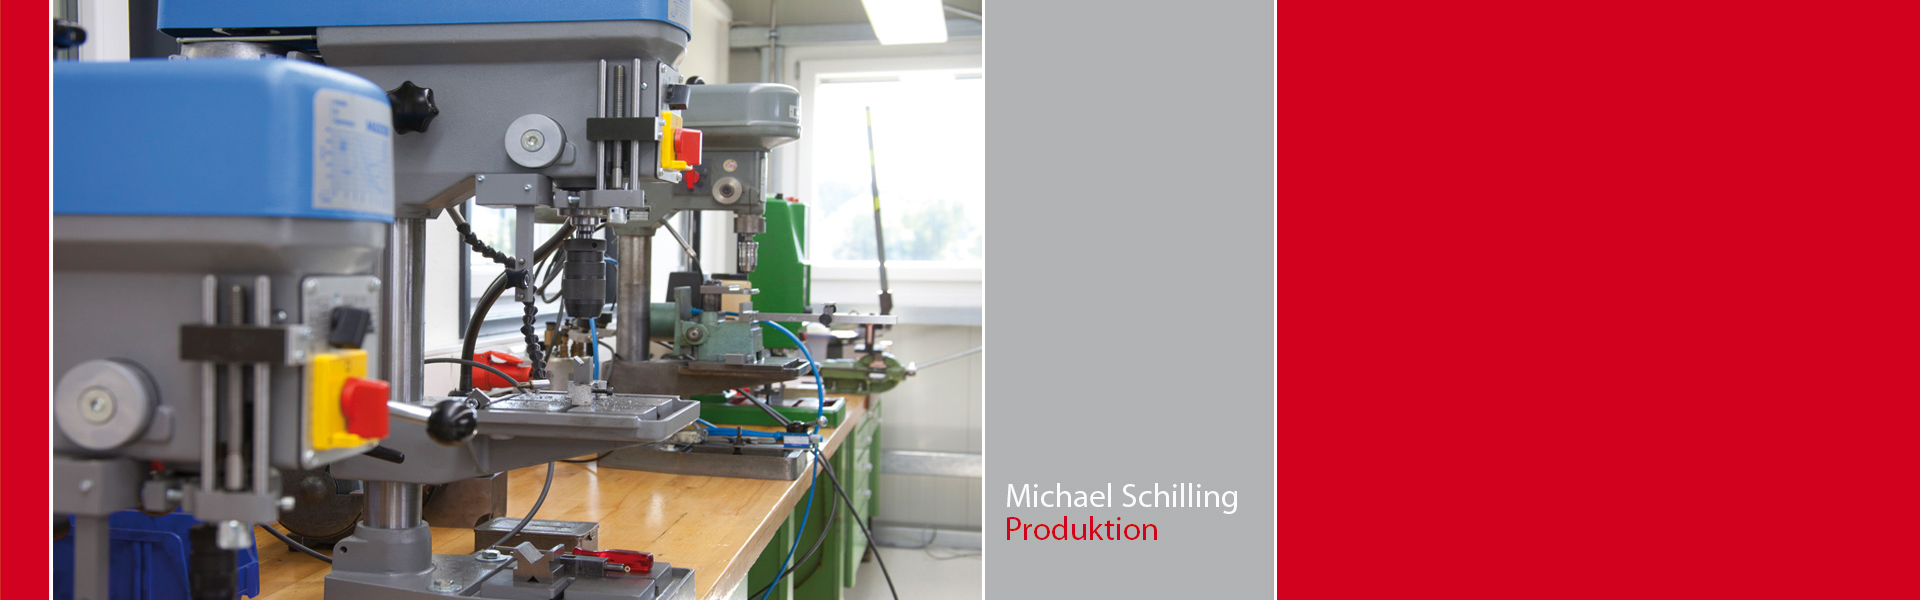 Schilling_Produktion_1920